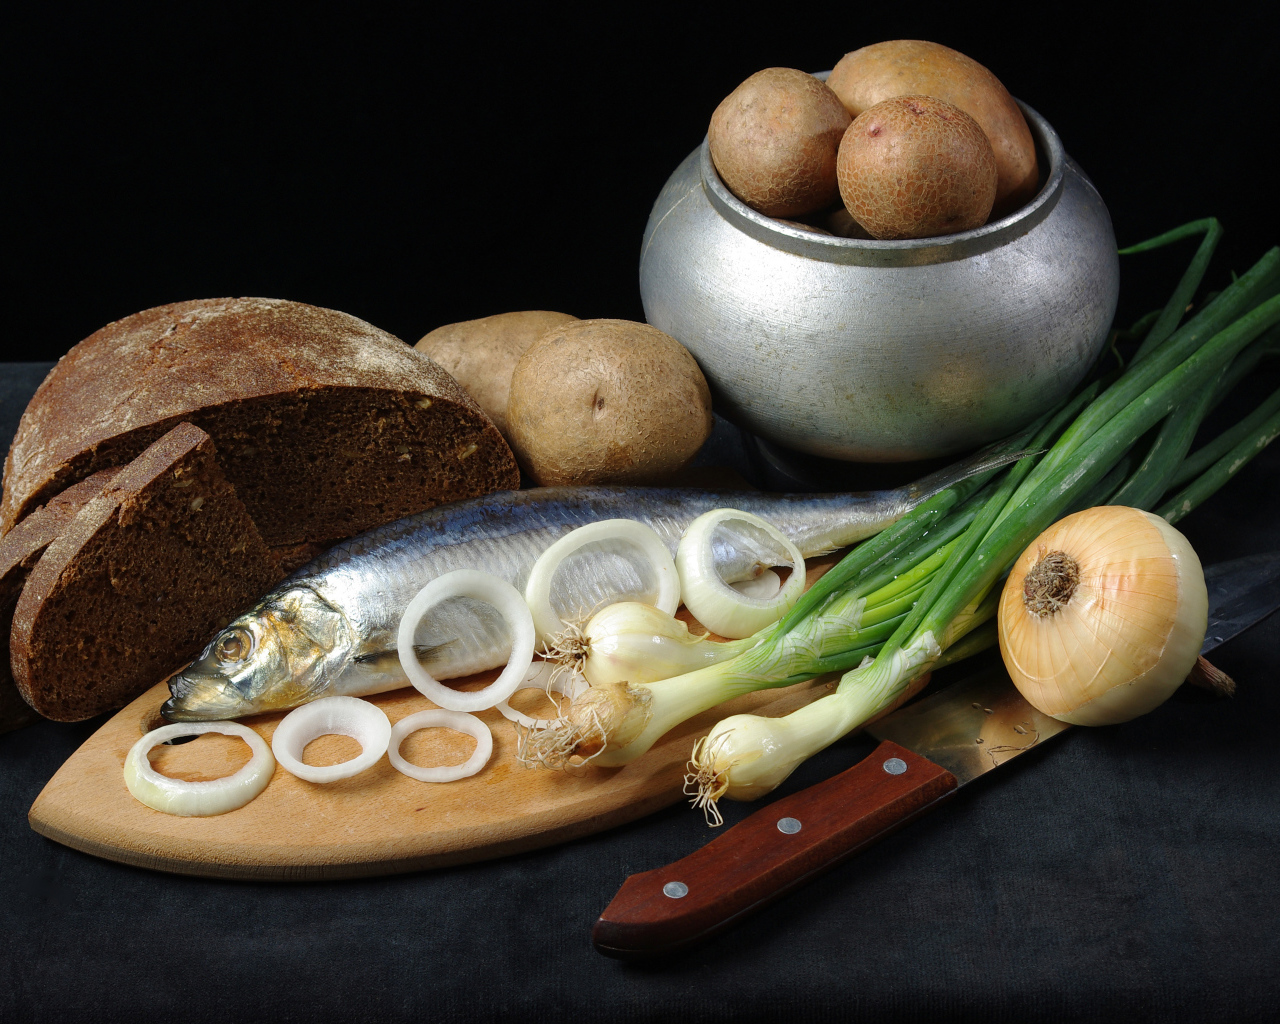 Сельдь на столе с картофелем, черным хлебом и луком 